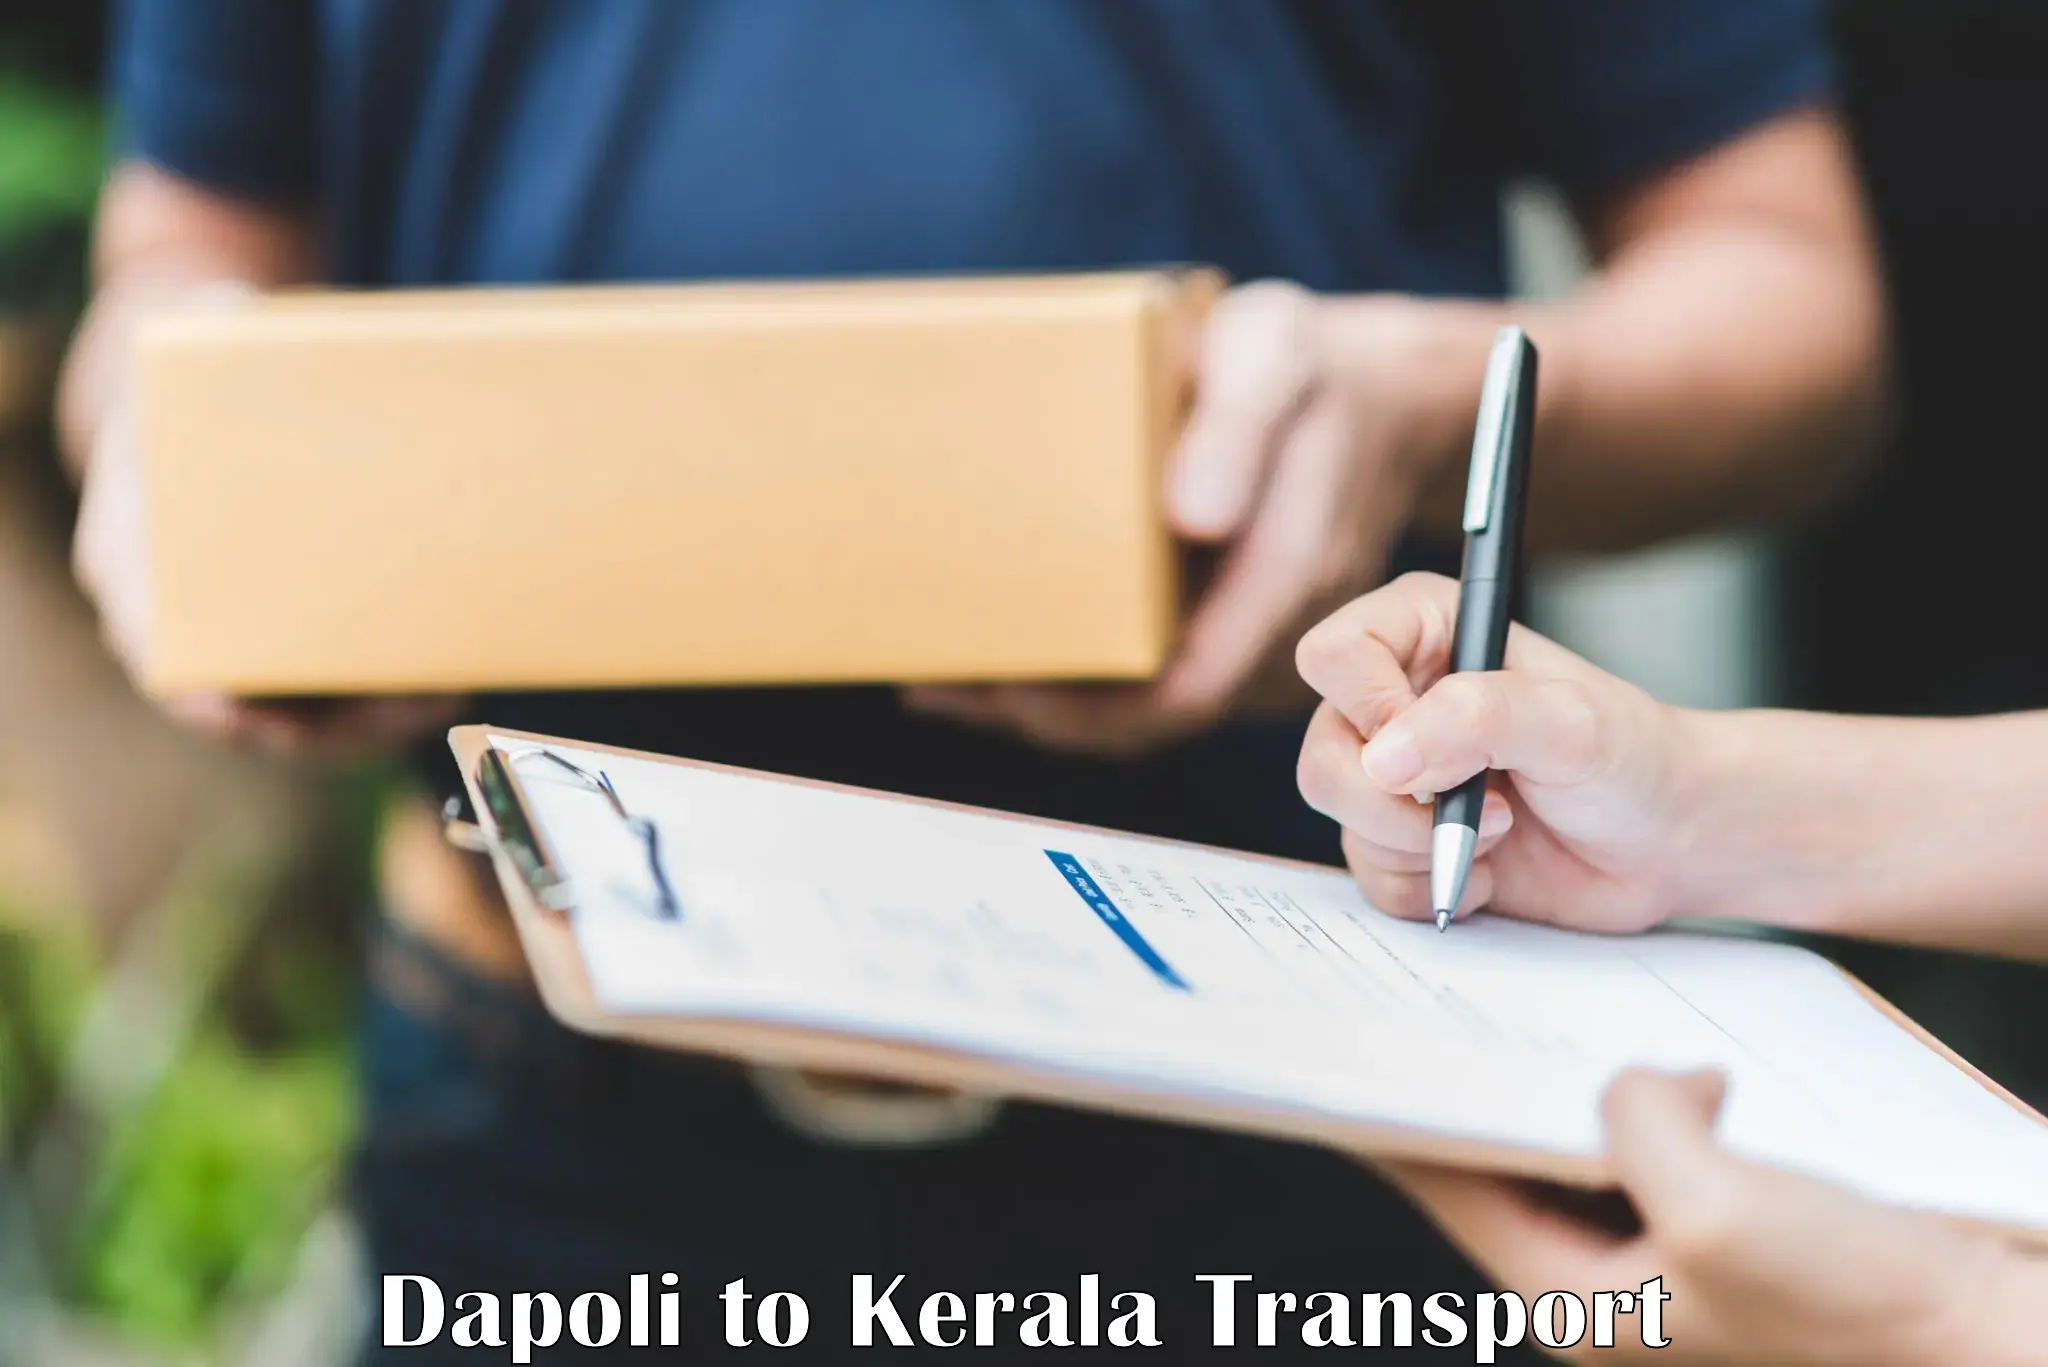 International cargo transportation services Dapoli to Kakkur